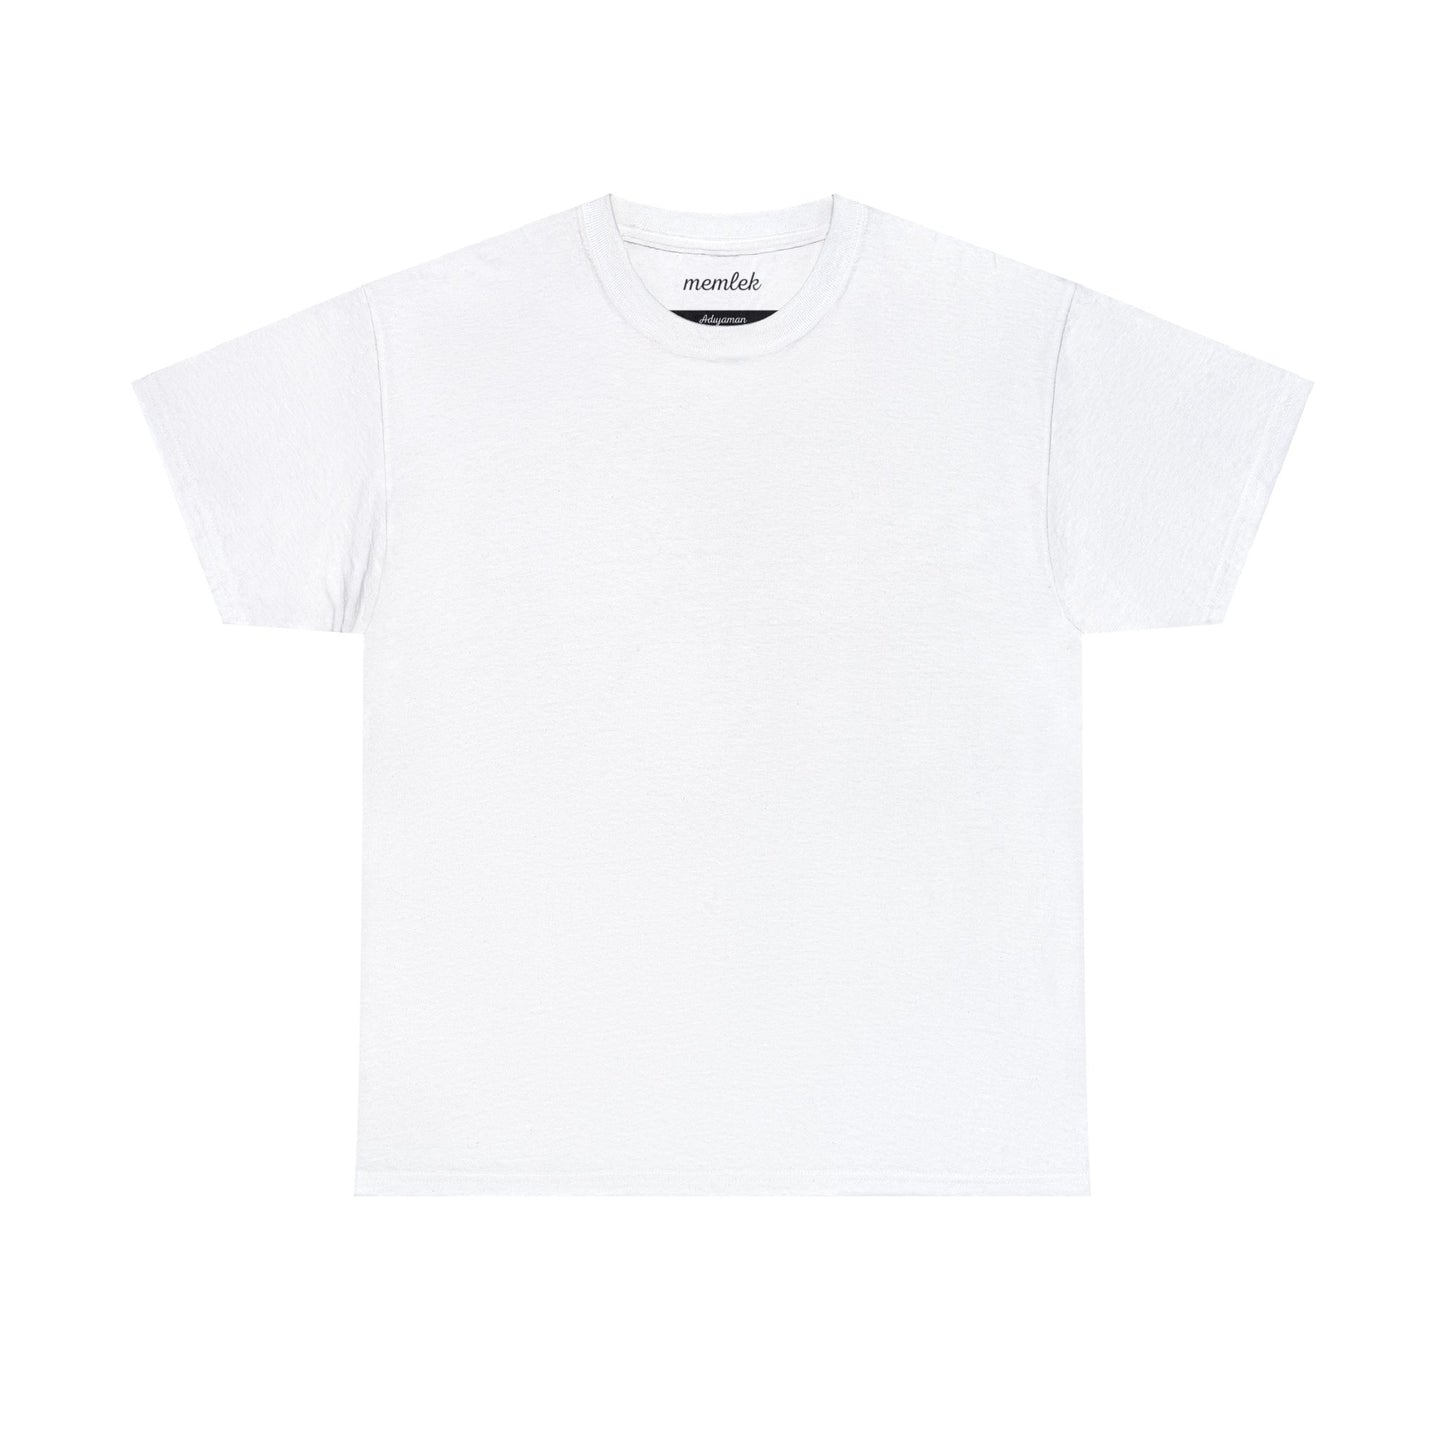 Kurt - 02 Adıyaman - T-Shirt - Back Print - Black/White